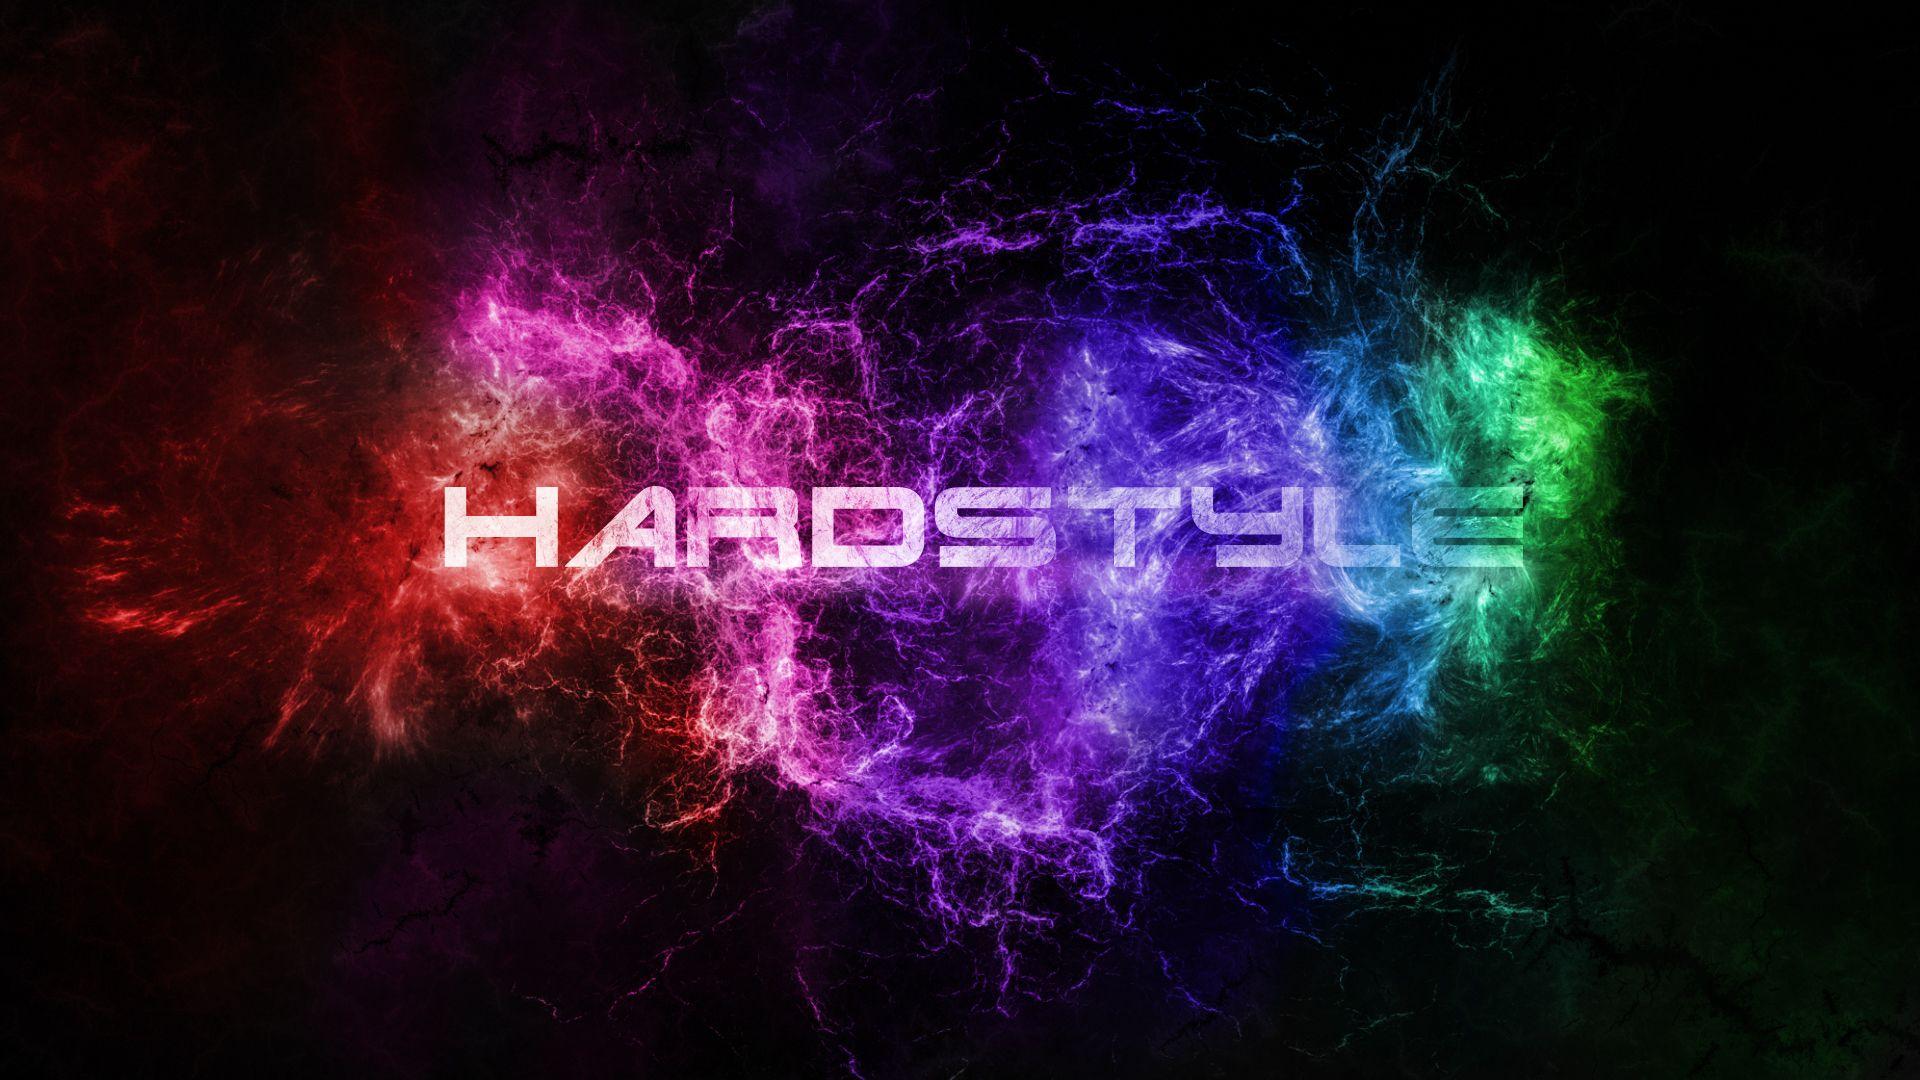 V.626: Hardstyle Wallpaper, HD Image of Hardstyle, Ultra HD 4K